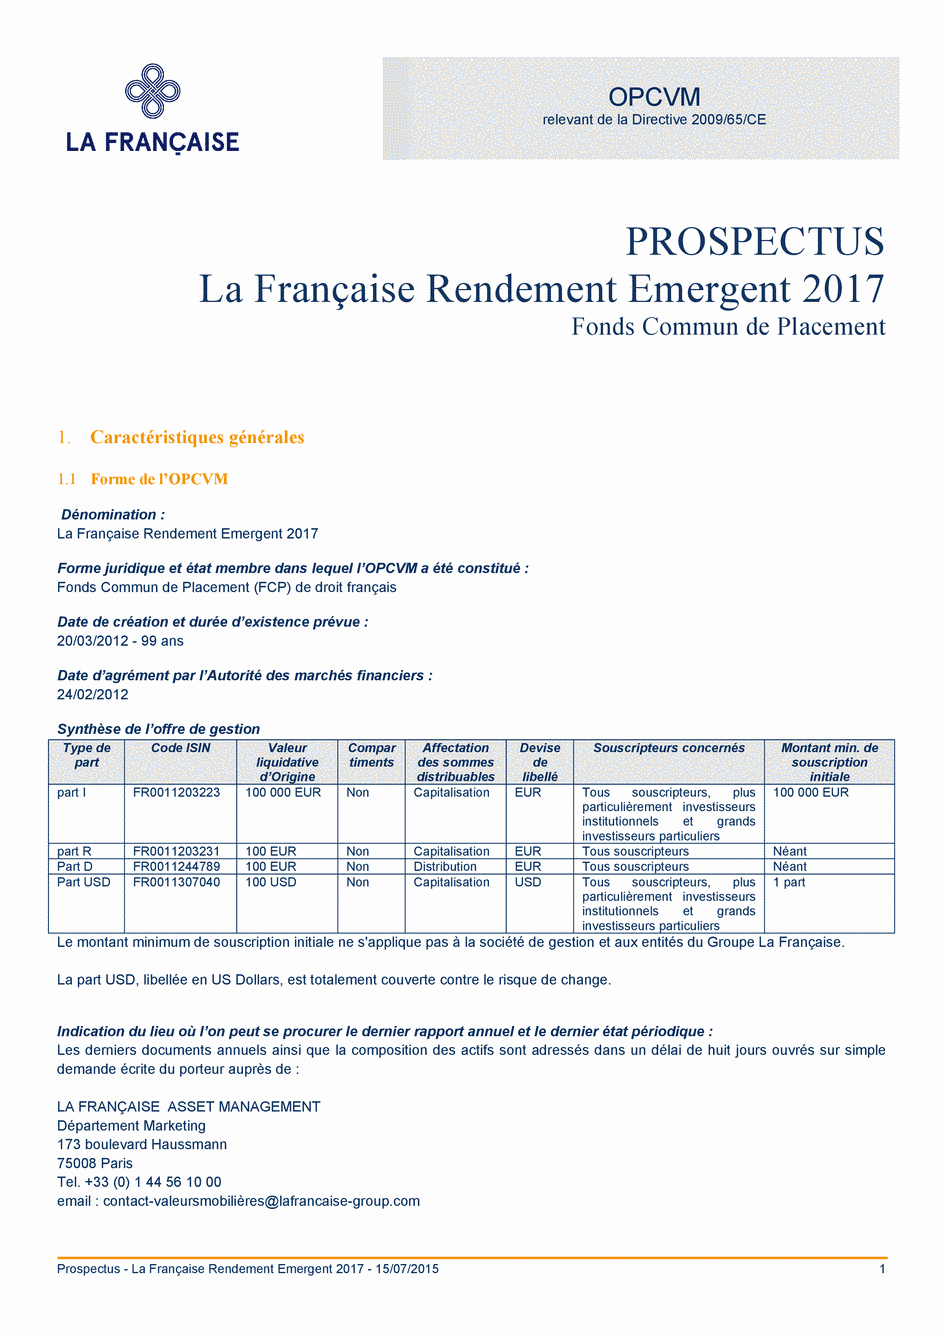 Prospectus La Française Rendement Emergent 2017 - Part S - USD - 15/07/2015 - Français